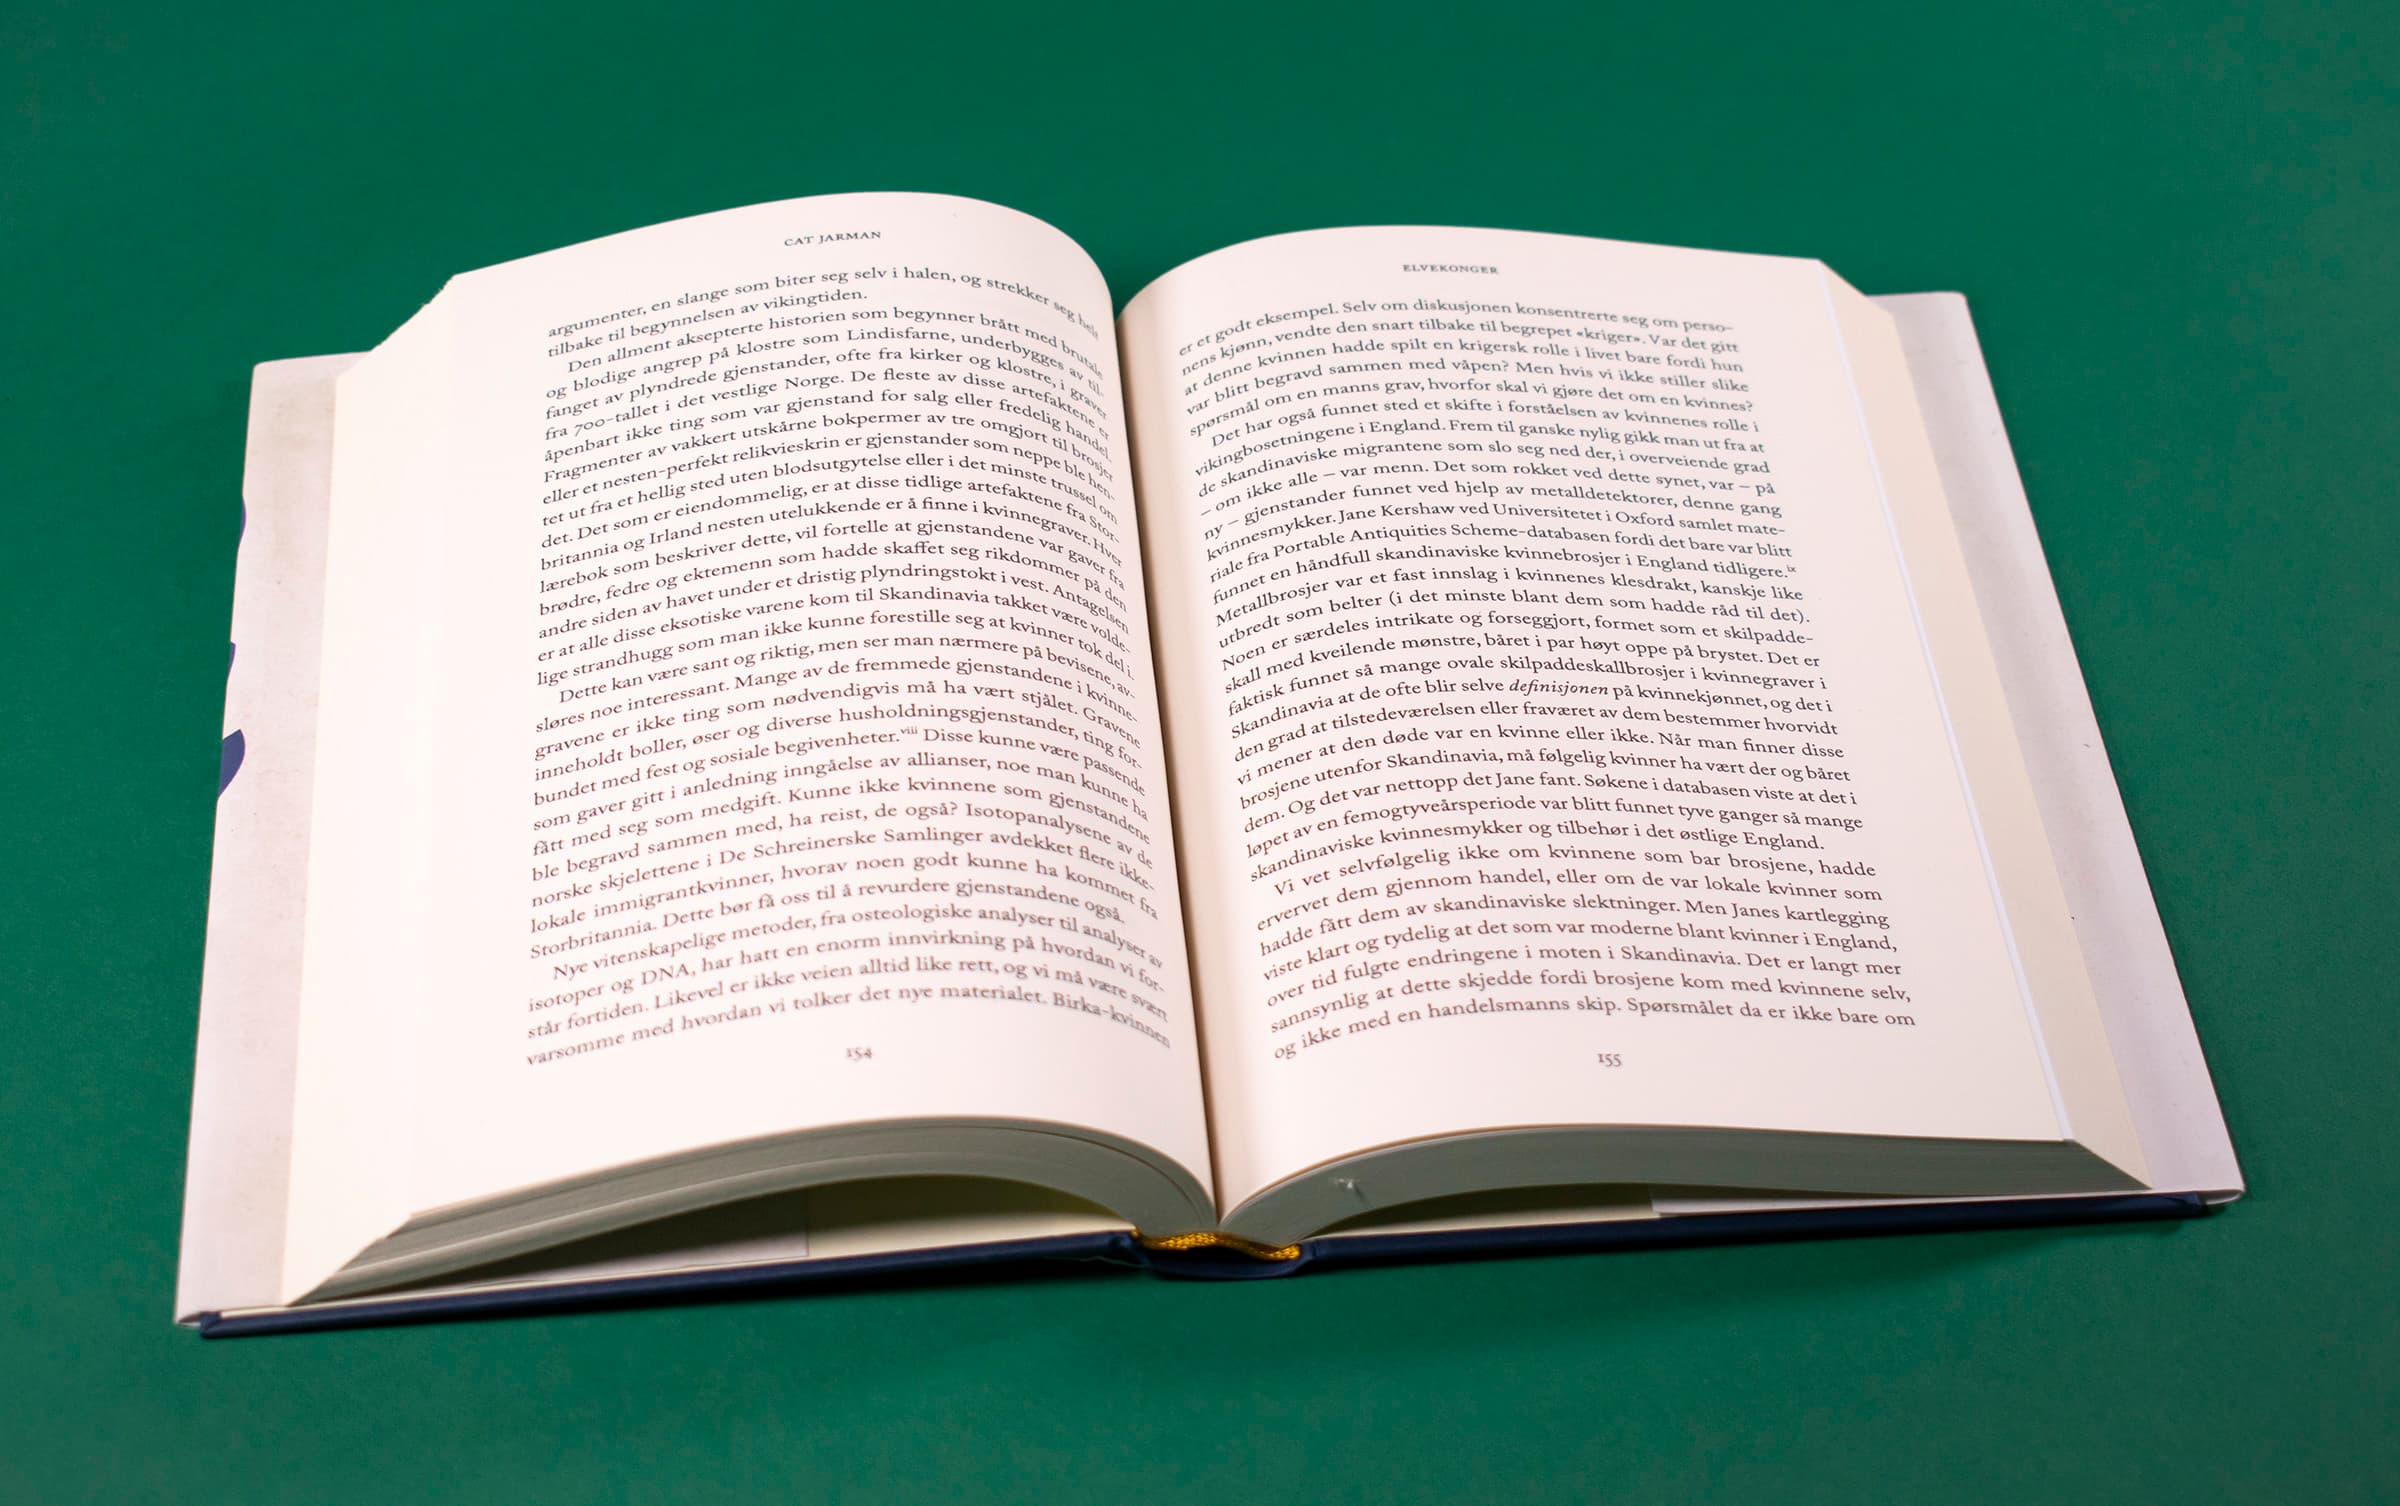 Bildet viser et oppslag av boken Elvekonger, og er kun tekst på sidene.